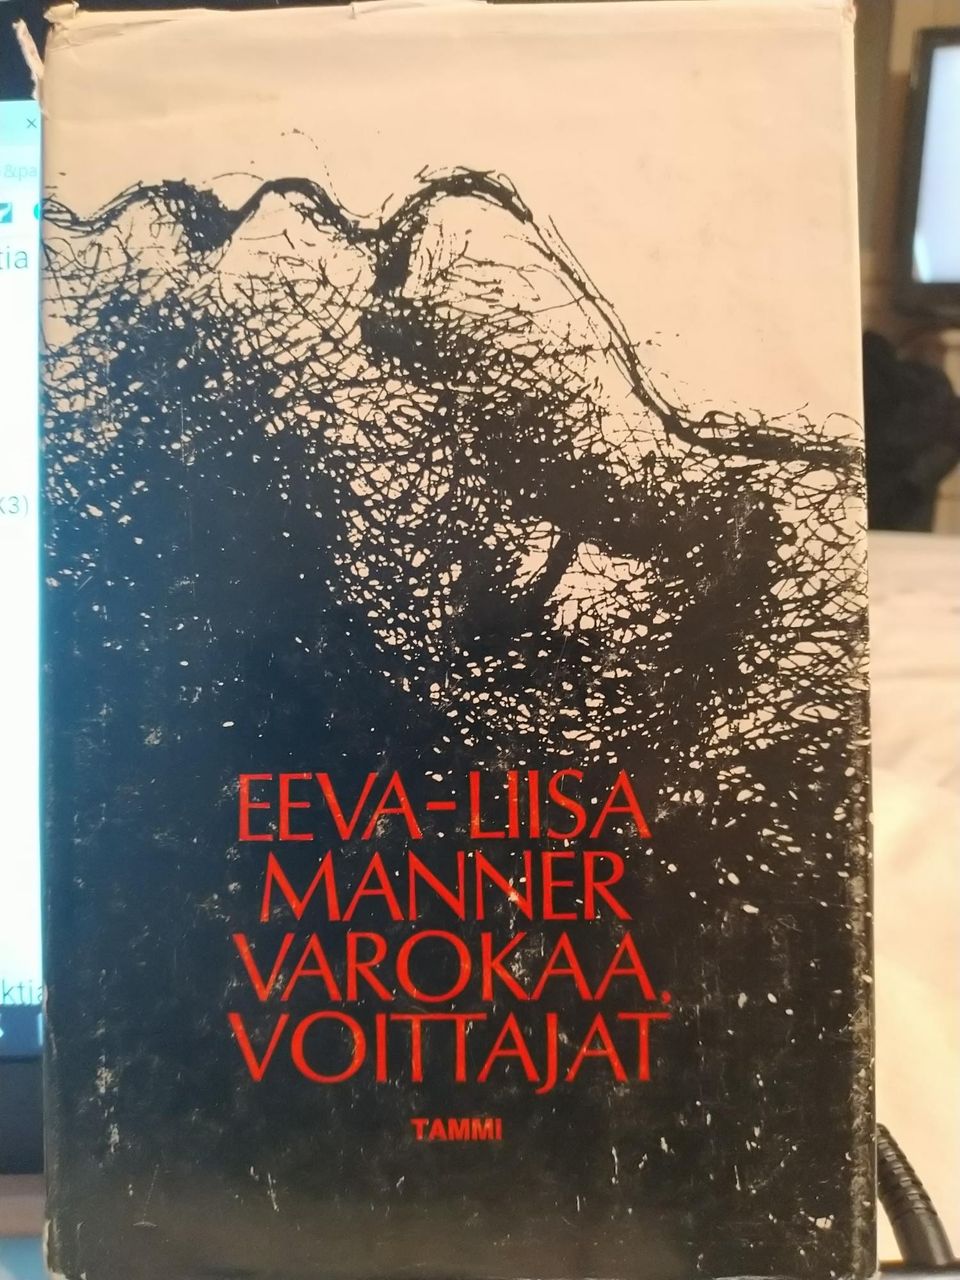 Varokaa voittajat - Eeva-Liisa Manner